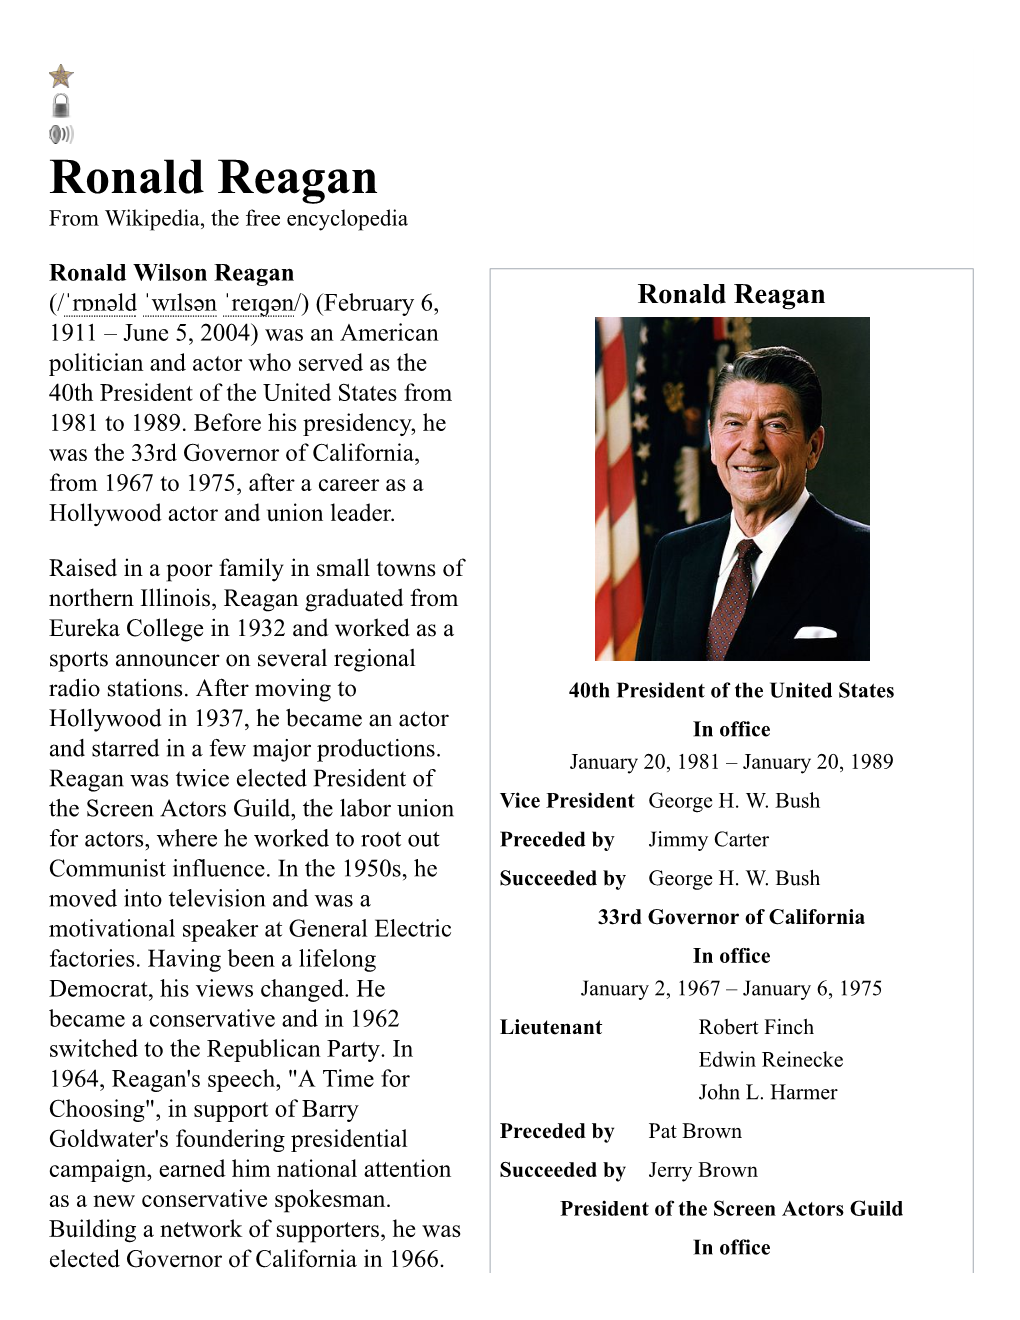 Ronald Reagan from Wikipedia, the Free Encyclopedia